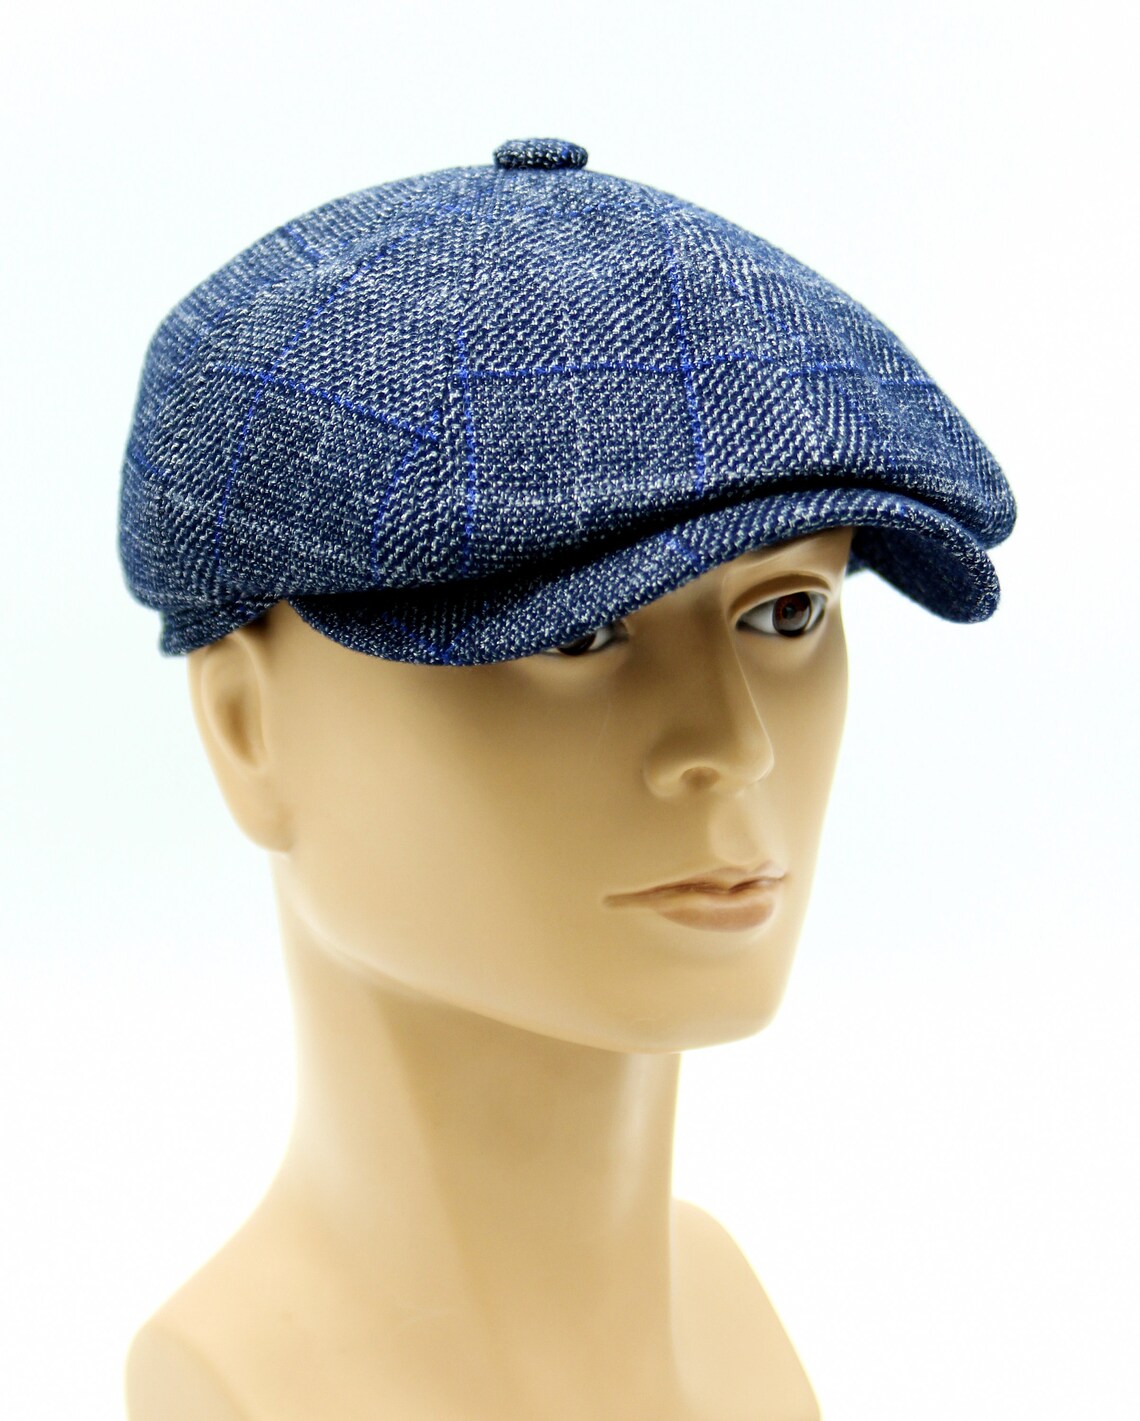 Men's Autumn Spring Tweed Newsboy Cap Baker Boy Hat. | Etsy